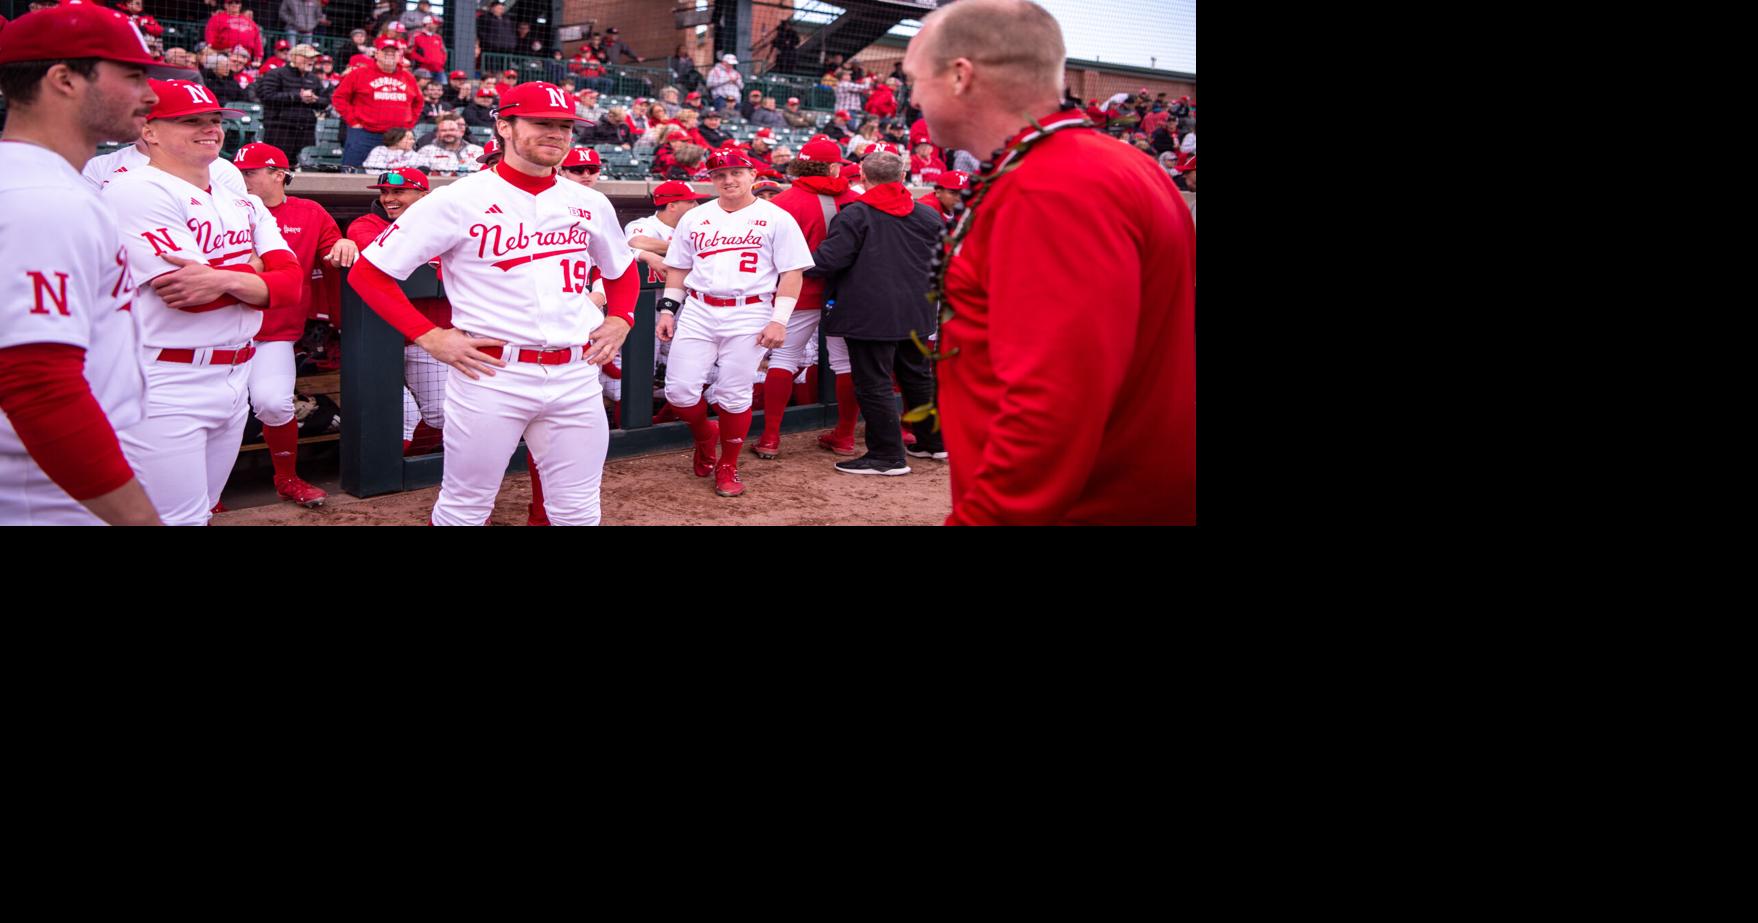 Gordon Captains Nebraska All-Star Baseball Team - University of Nebraska -  Official Athletics Website